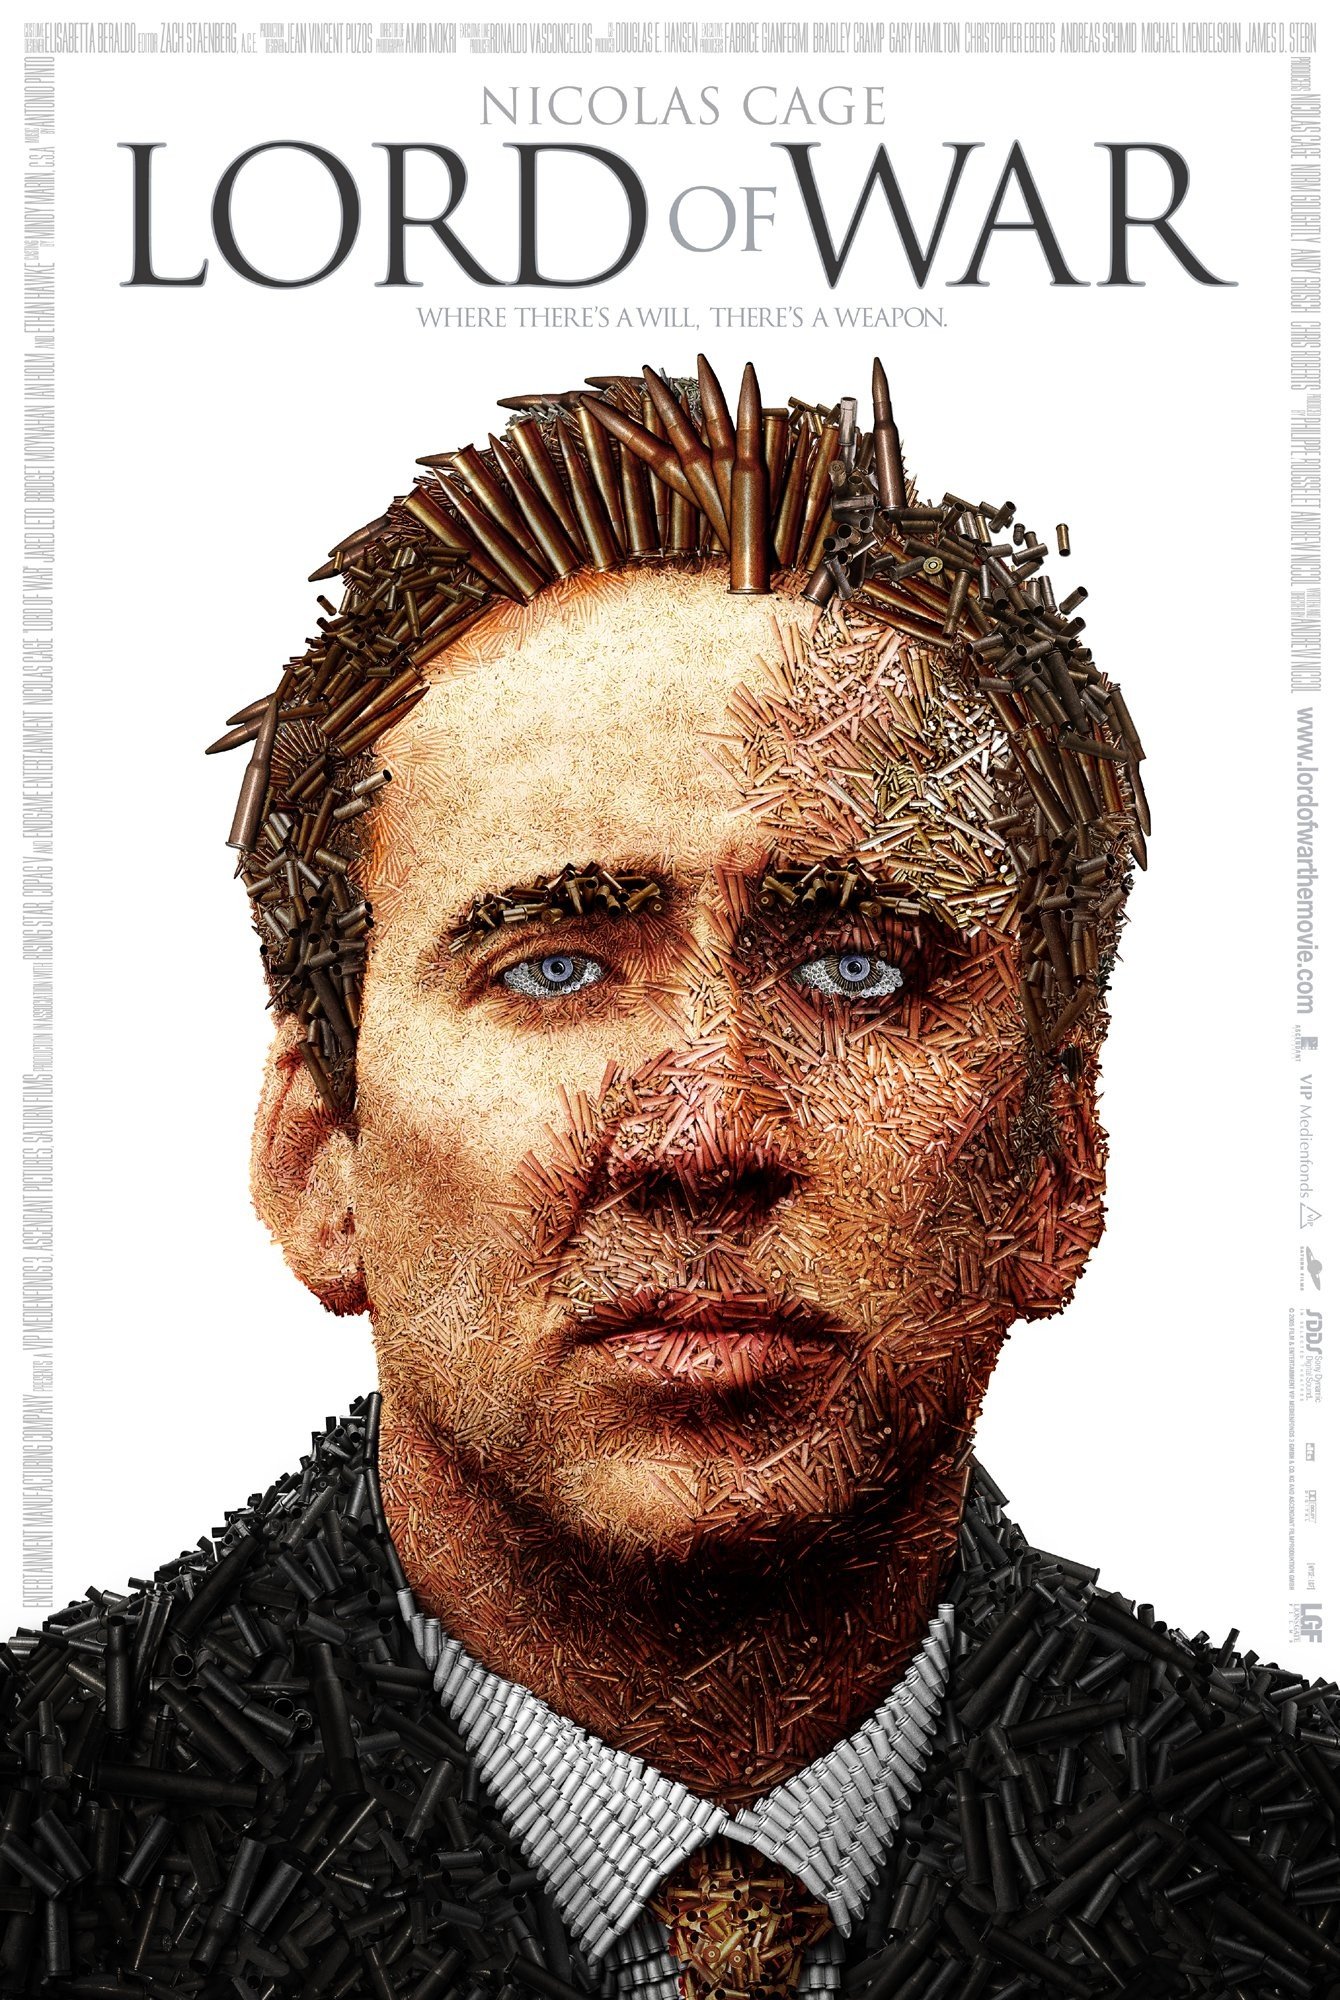 Lord of War, Nicolas Cage Wallpaper